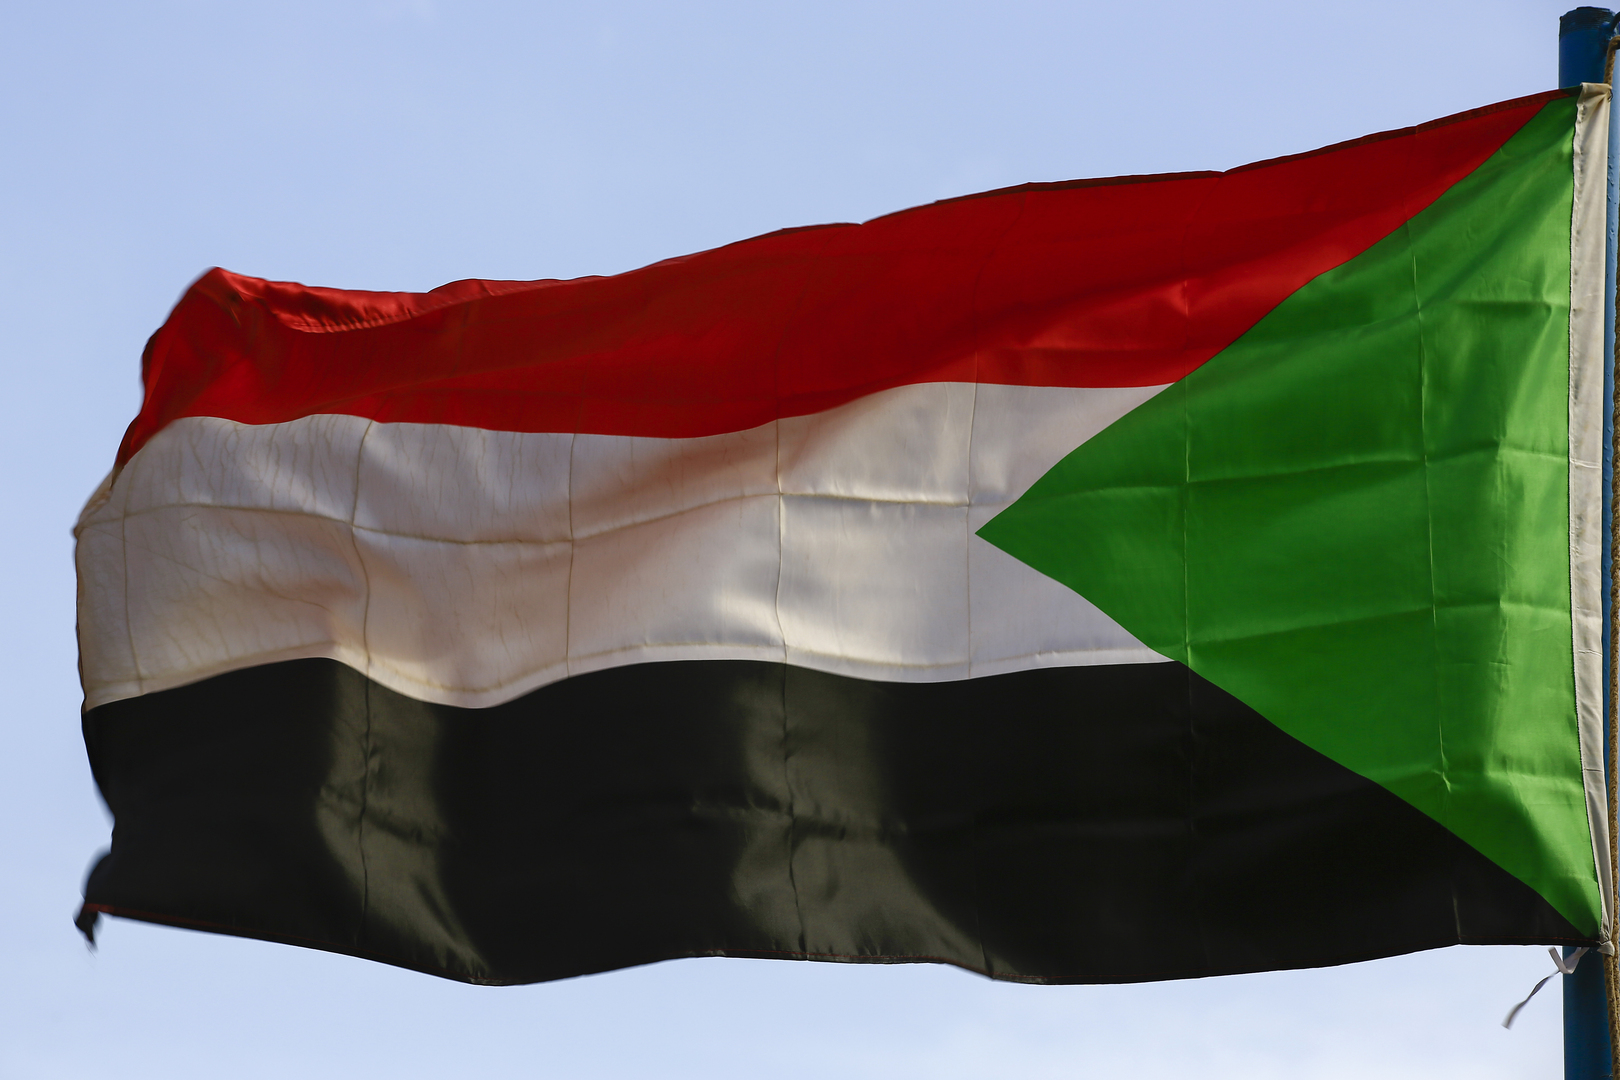 تجمع المهنيين السودانيين يطالب بحلّ قوات الدعم السريع